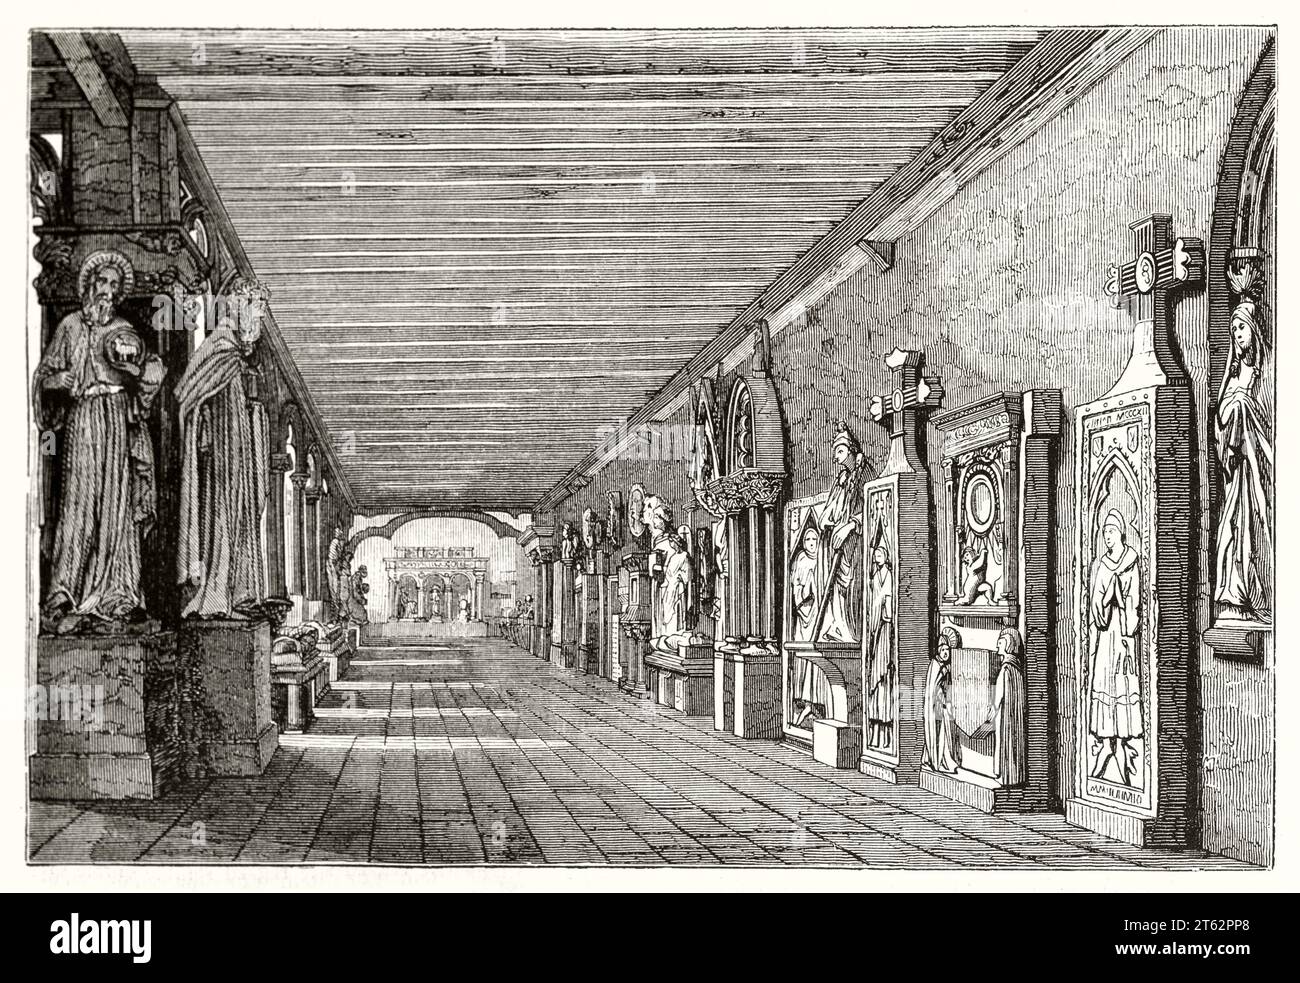 Vue ancienne du cloître du musée de Toulouse. Par Dauzat et Montigneul, publ. Sur magasin pittoresque, Paris, 1849 Banque D'Images